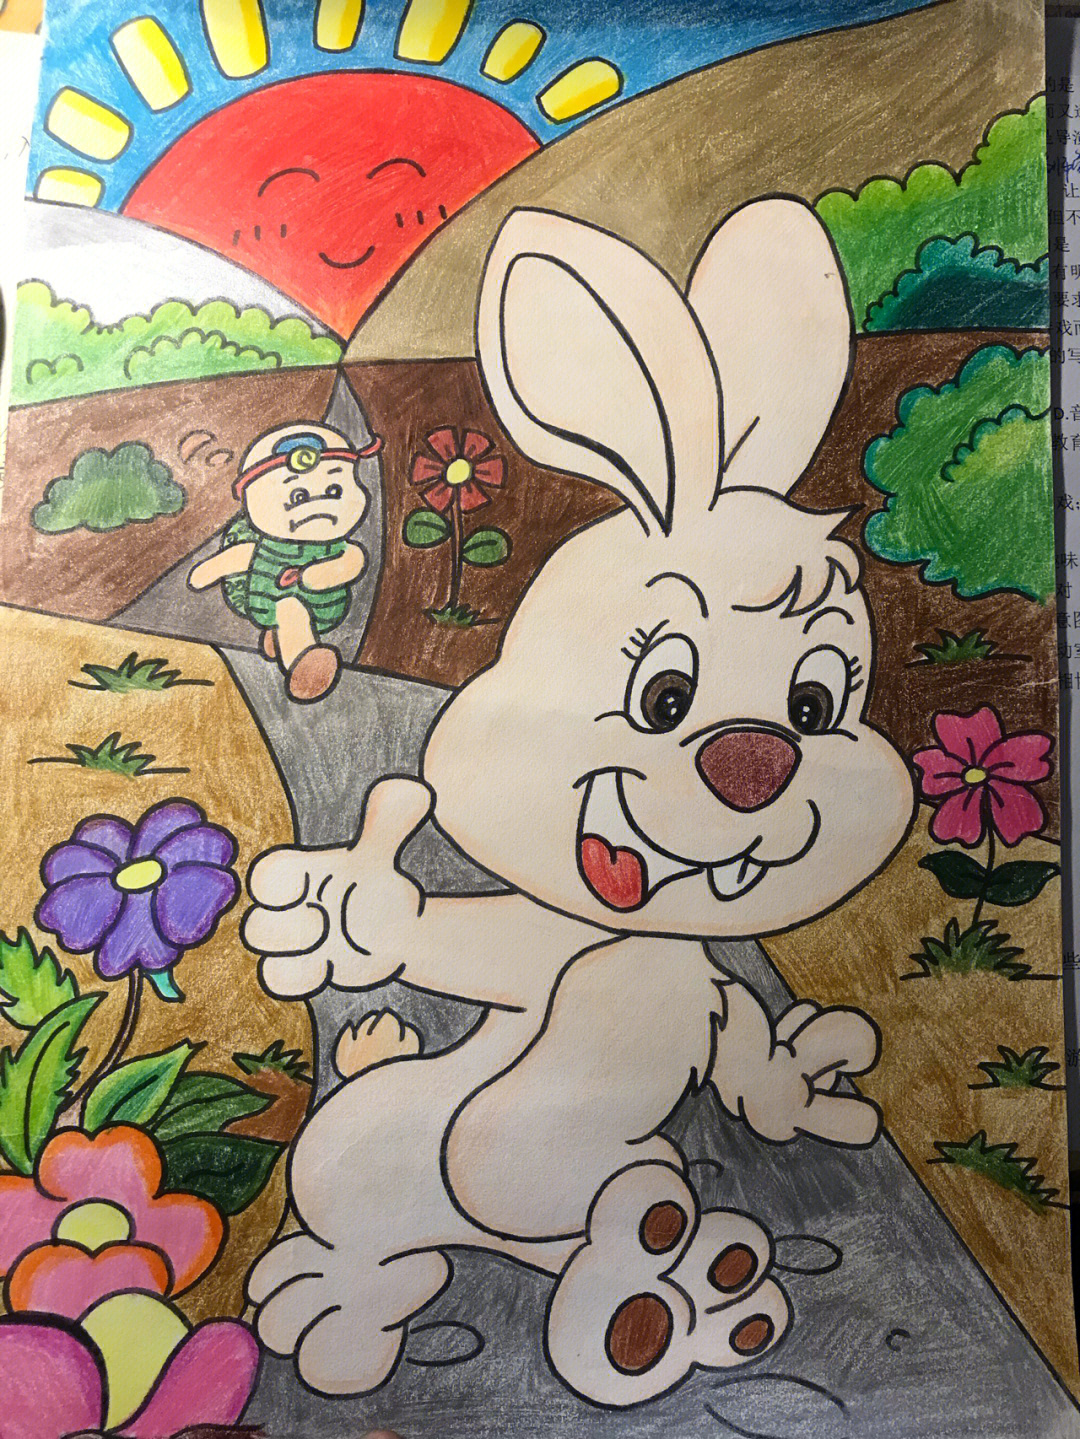 兔子和乌龟赛跑简笔画图片